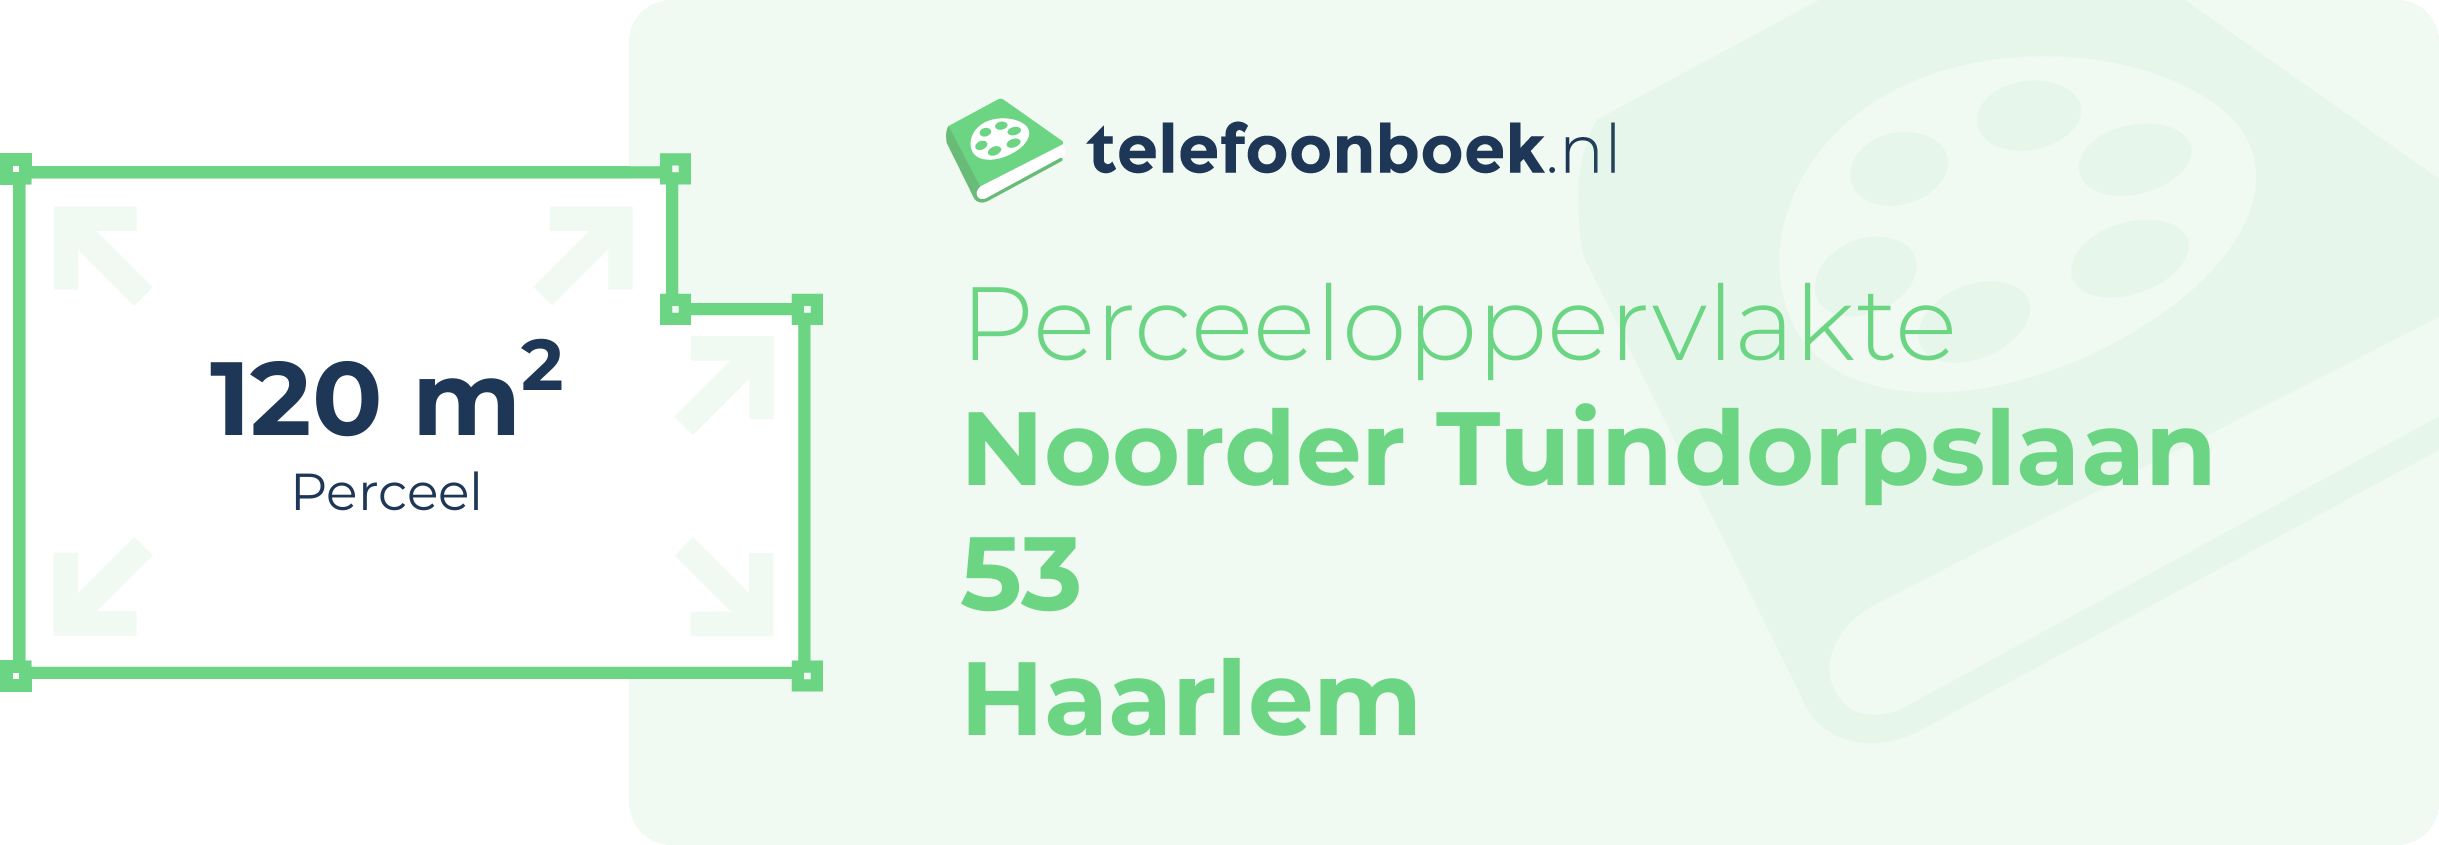 Perceeloppervlakte Noorder Tuindorpslaan 53 Haarlem